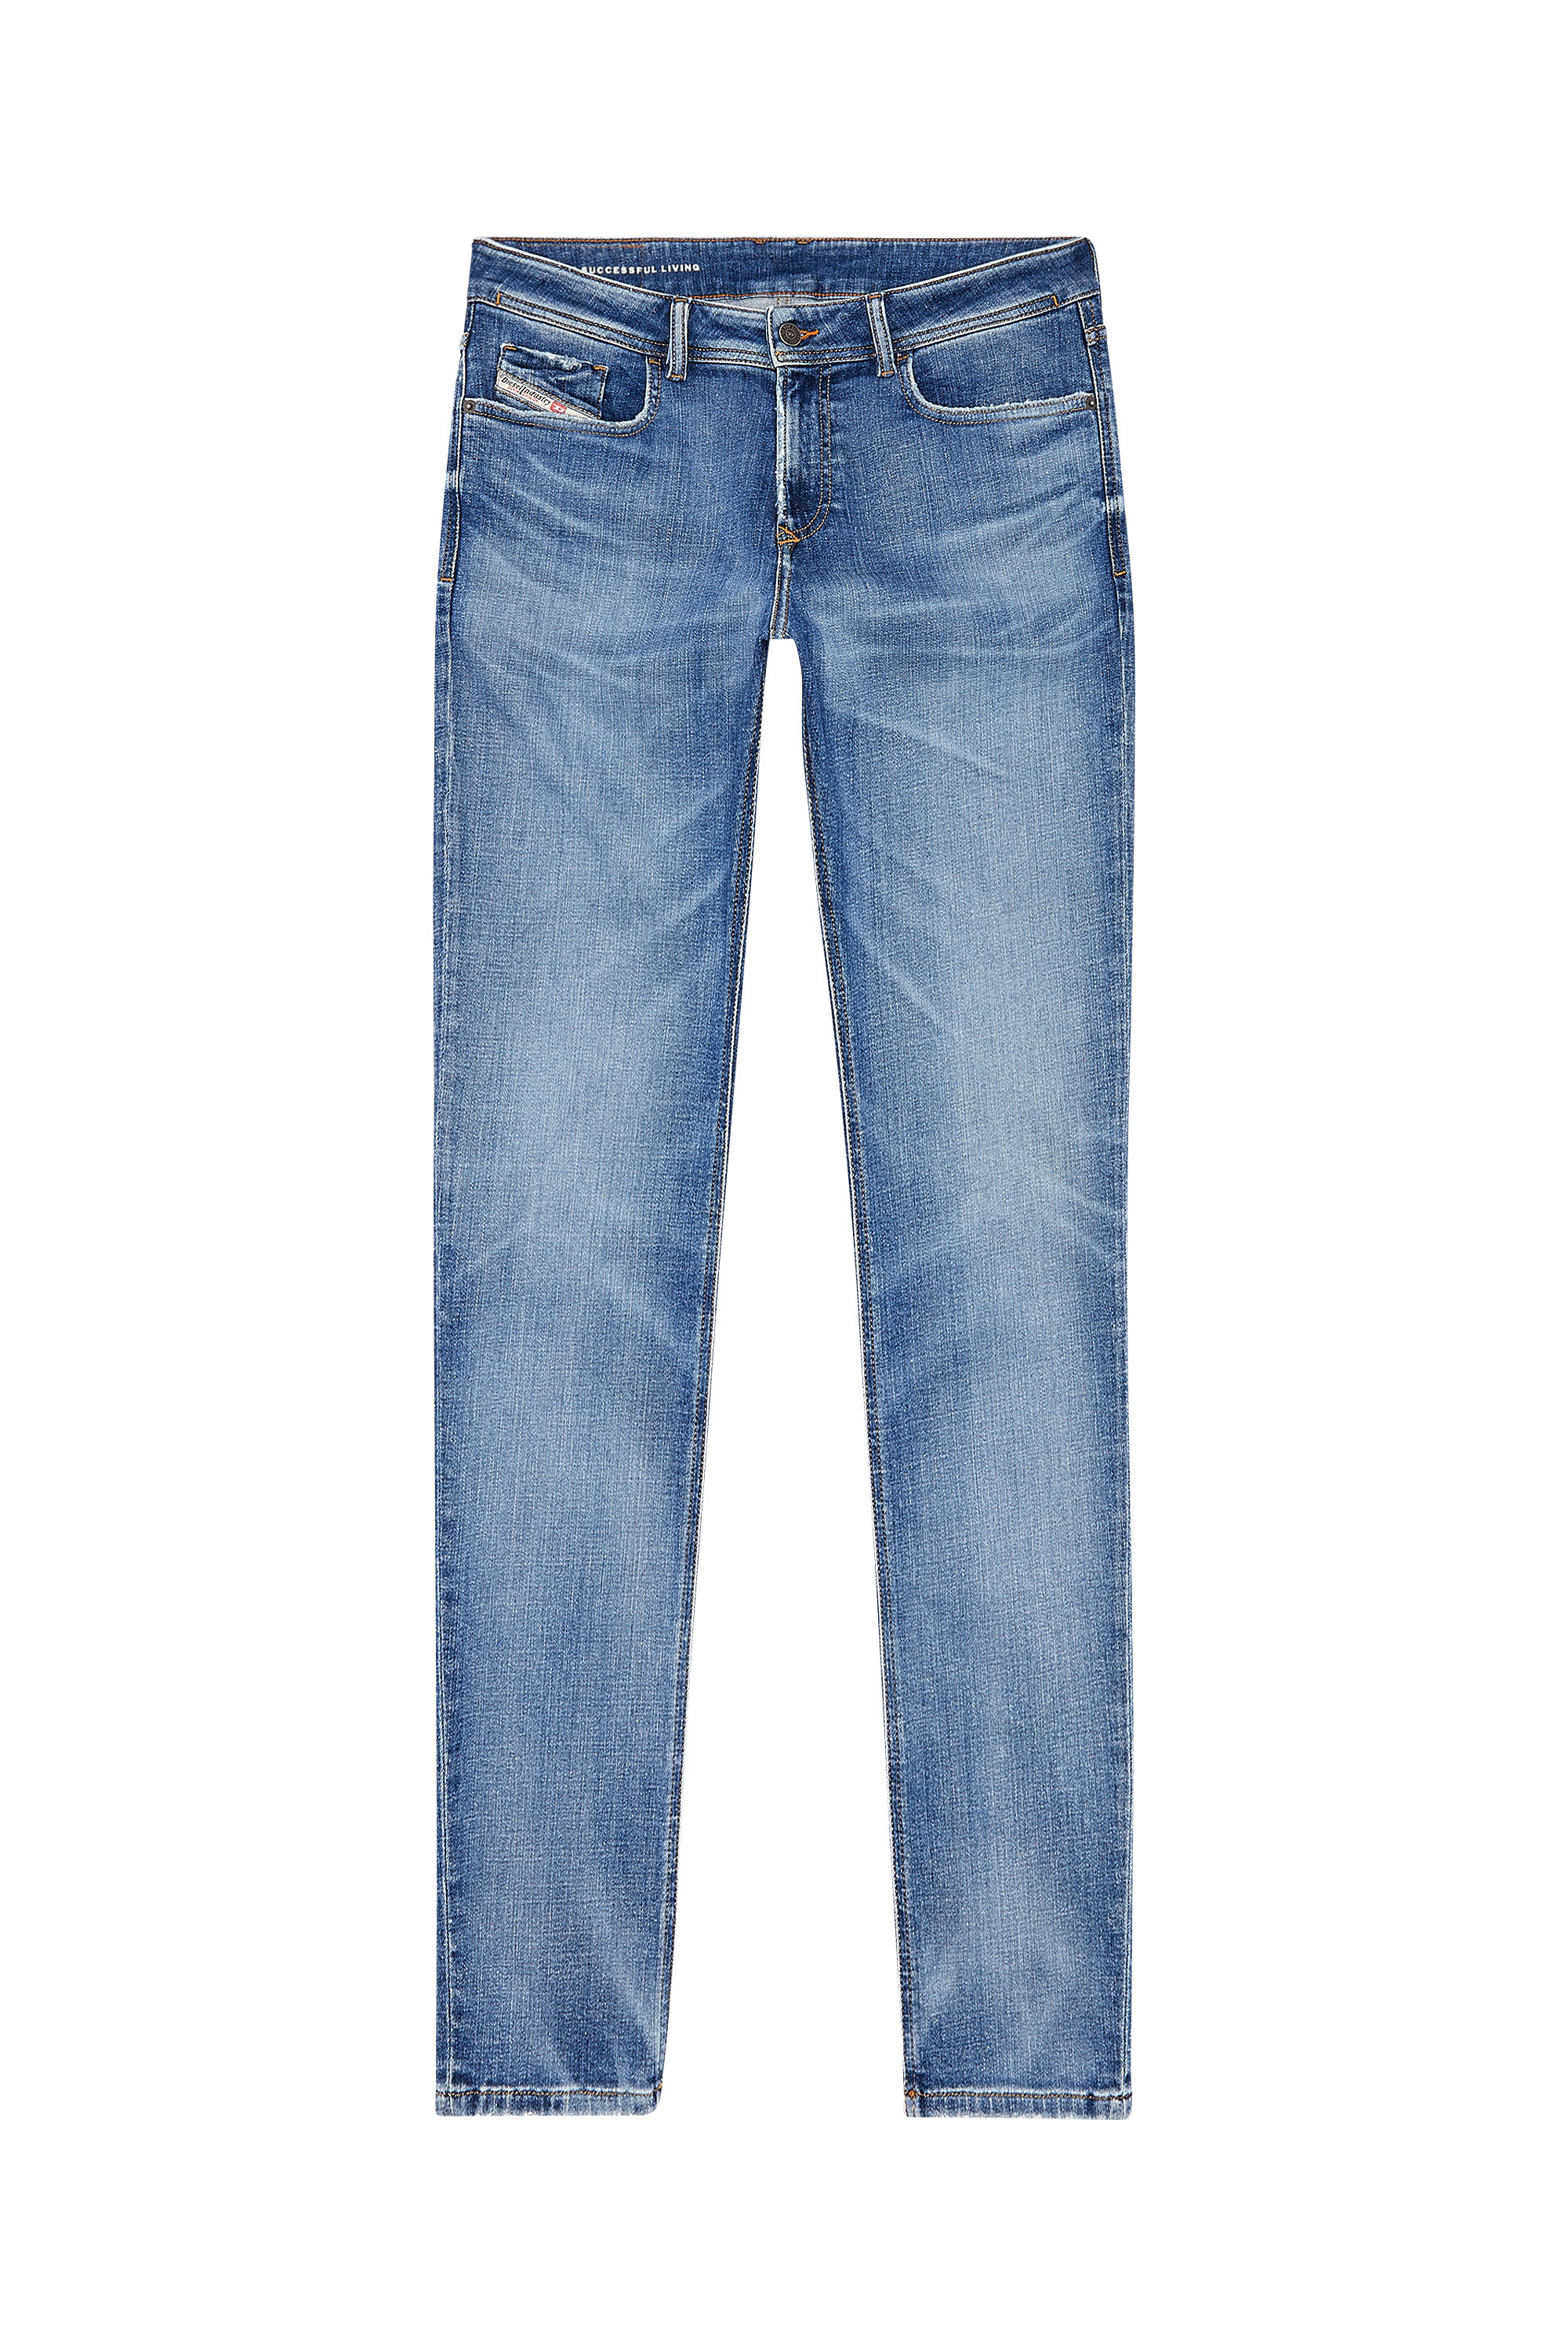 Diesel - Man Skinny Jeans 1979 Sleenker 09H68, Medium blue - Image 5